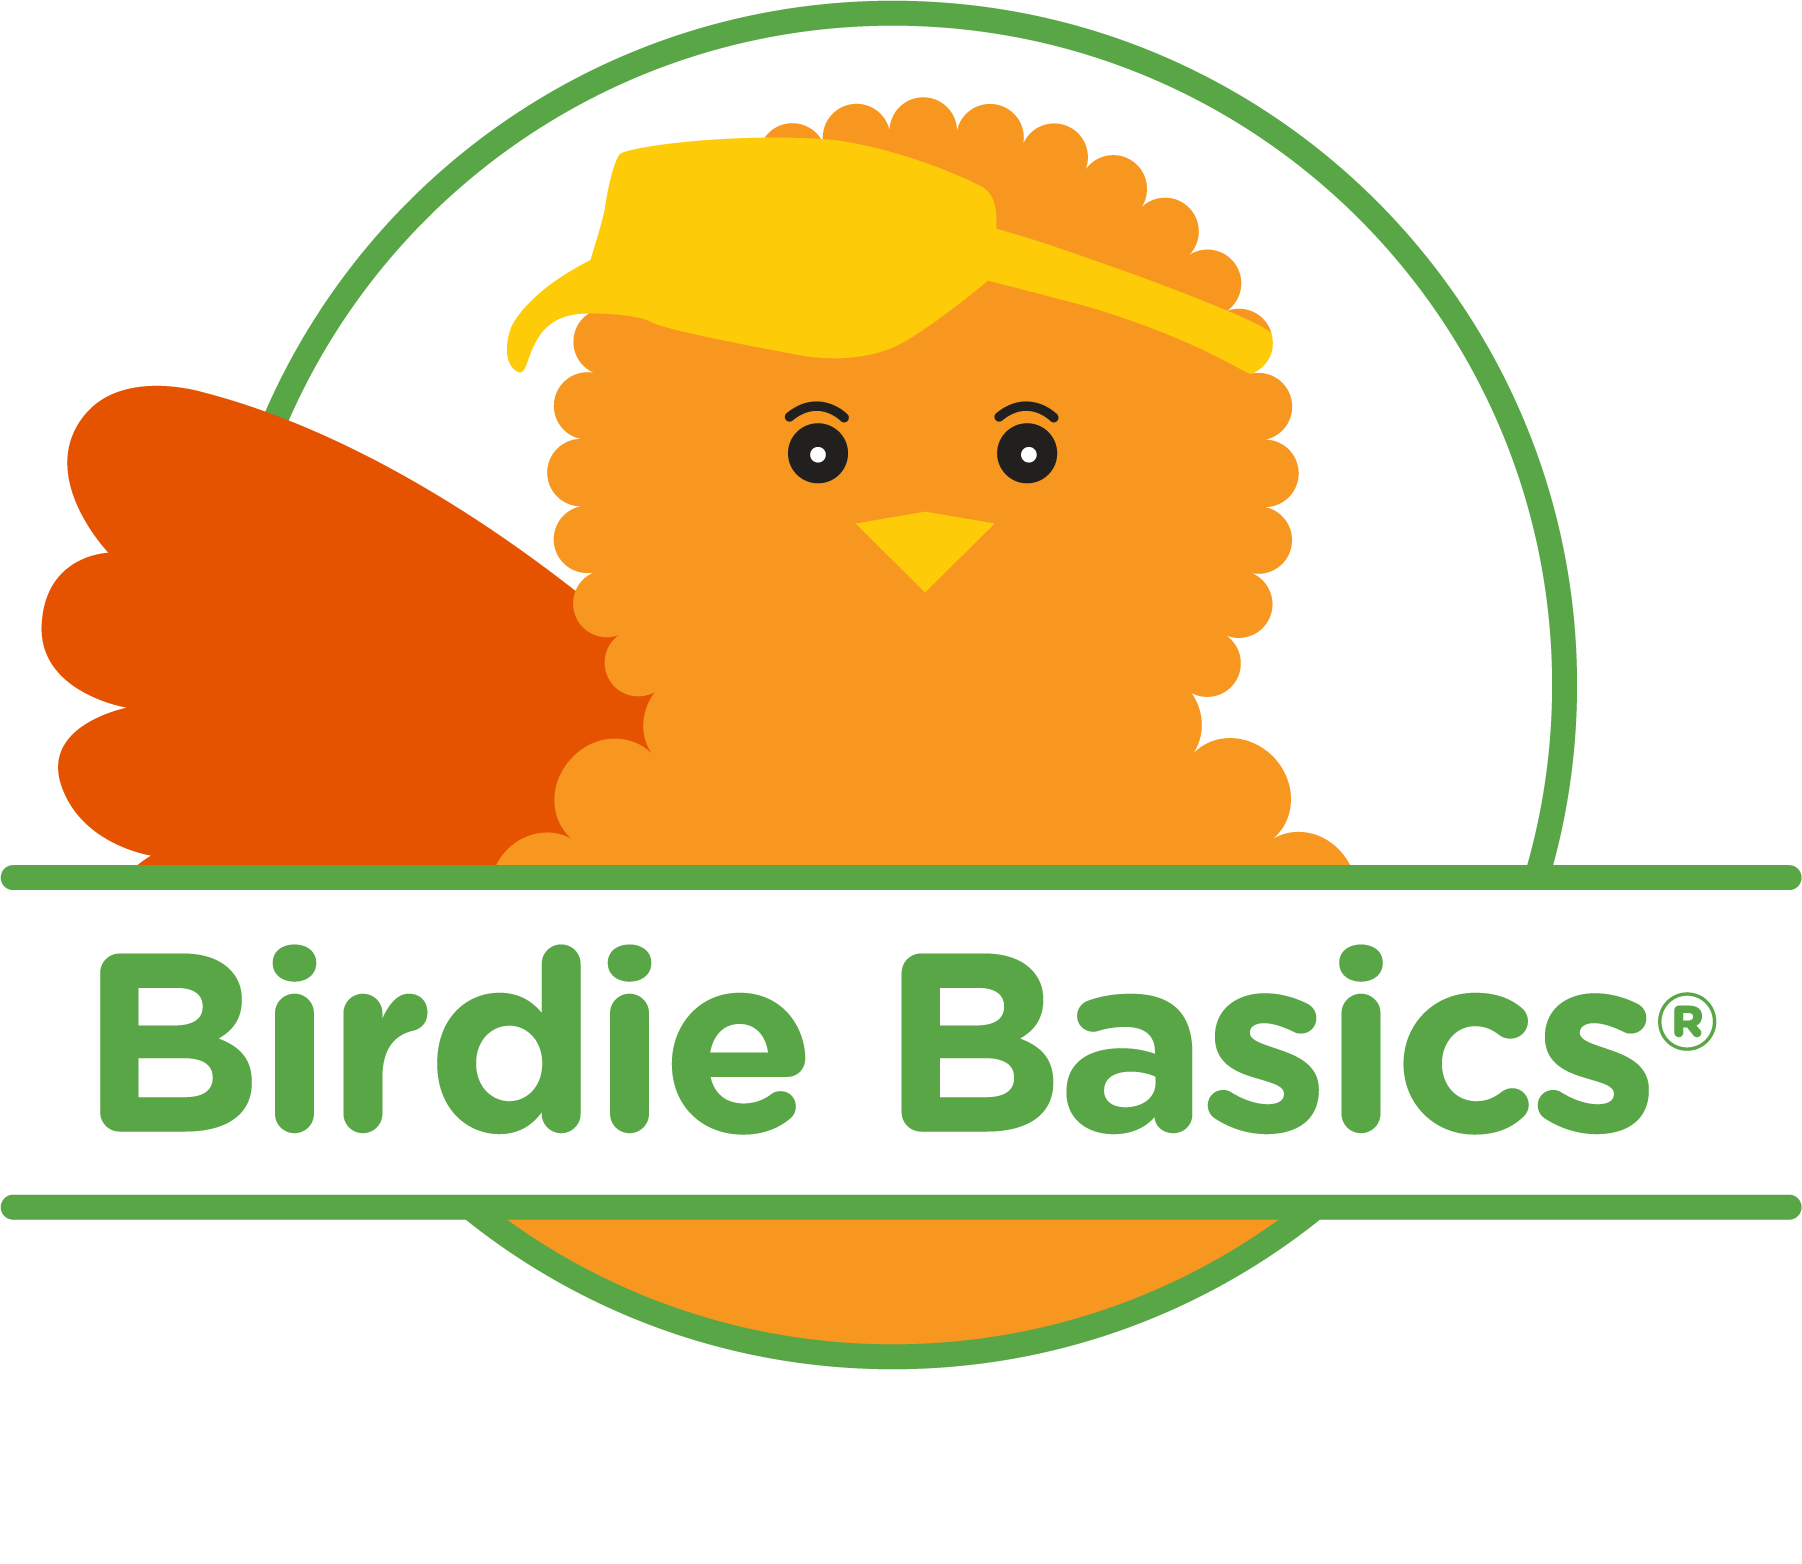 Birdie Basics